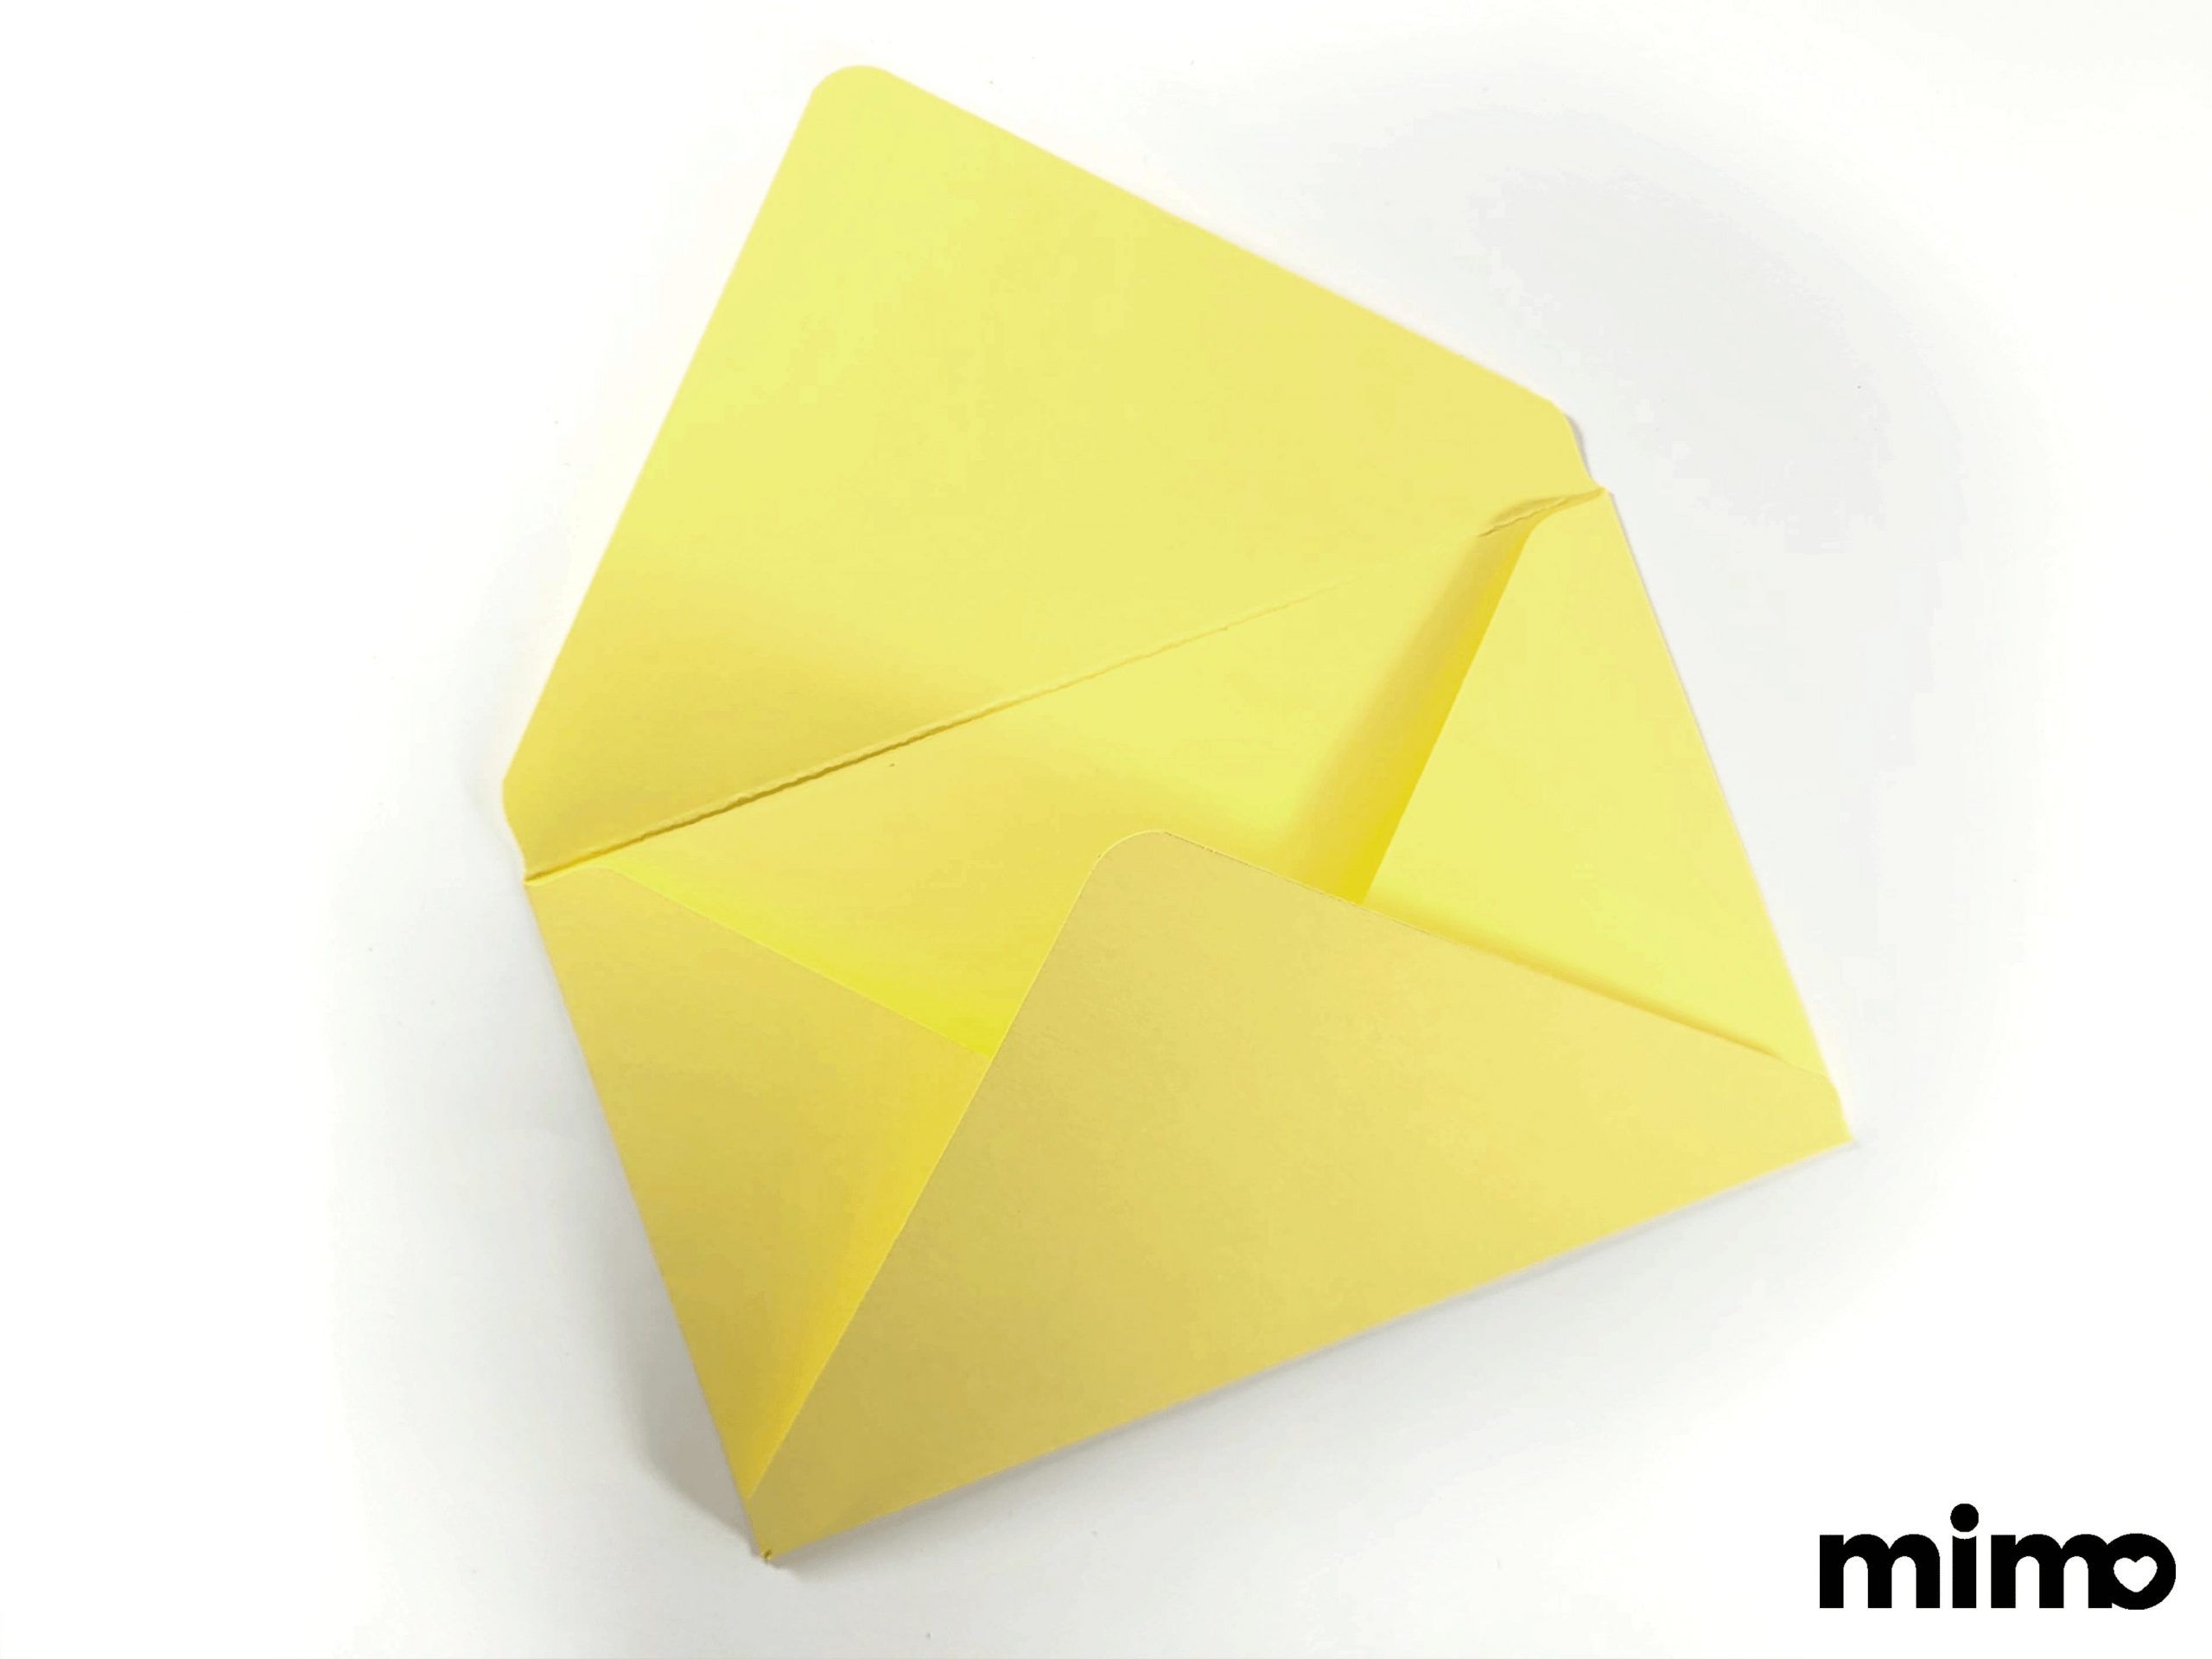 Resultado do envelope feito na Base Mimo Making para a criação de caixas e envelopes